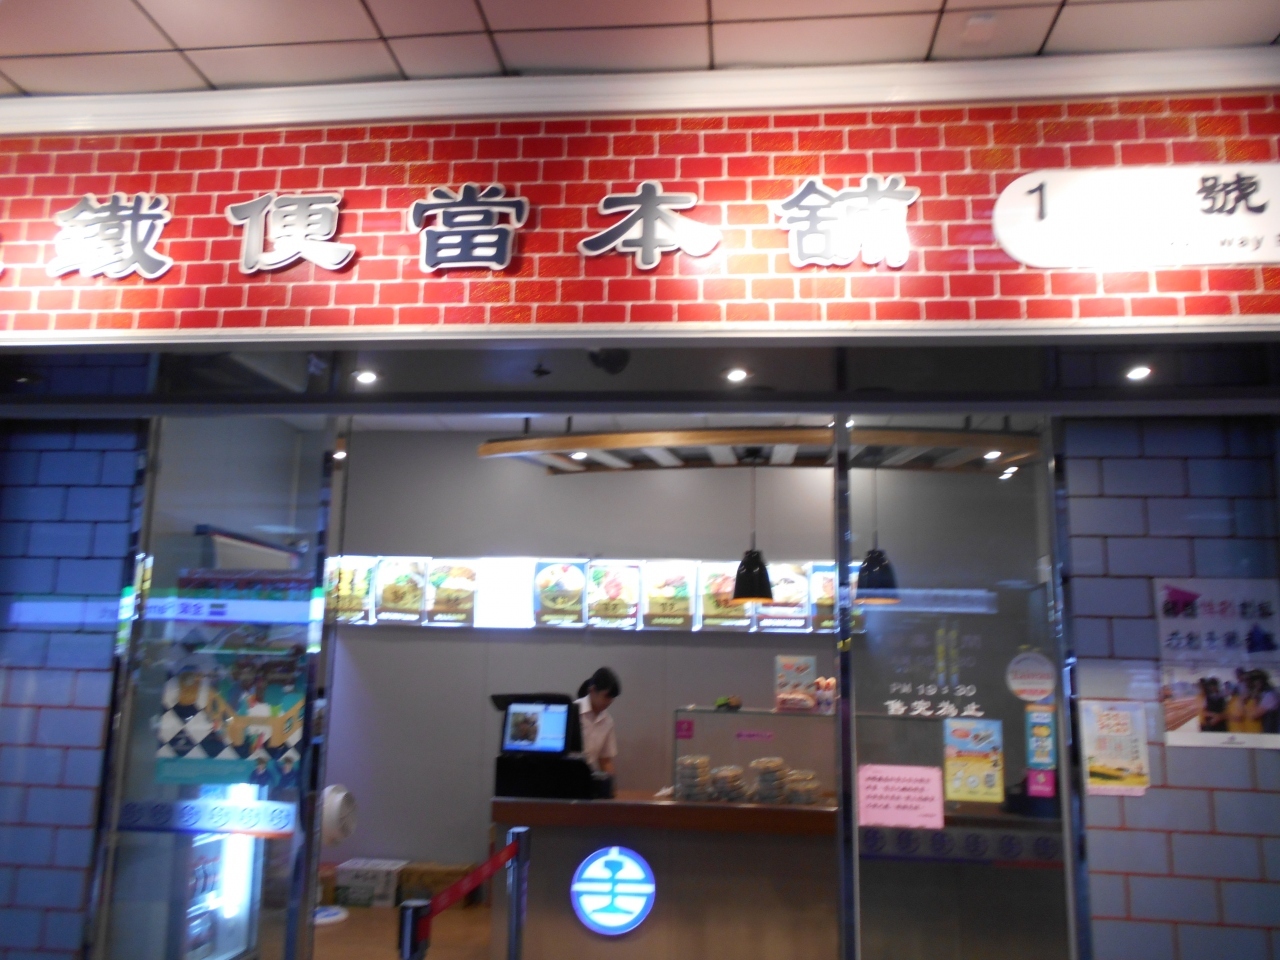 台北駅到着後、旦那希望により、まず一番で弁当購入。